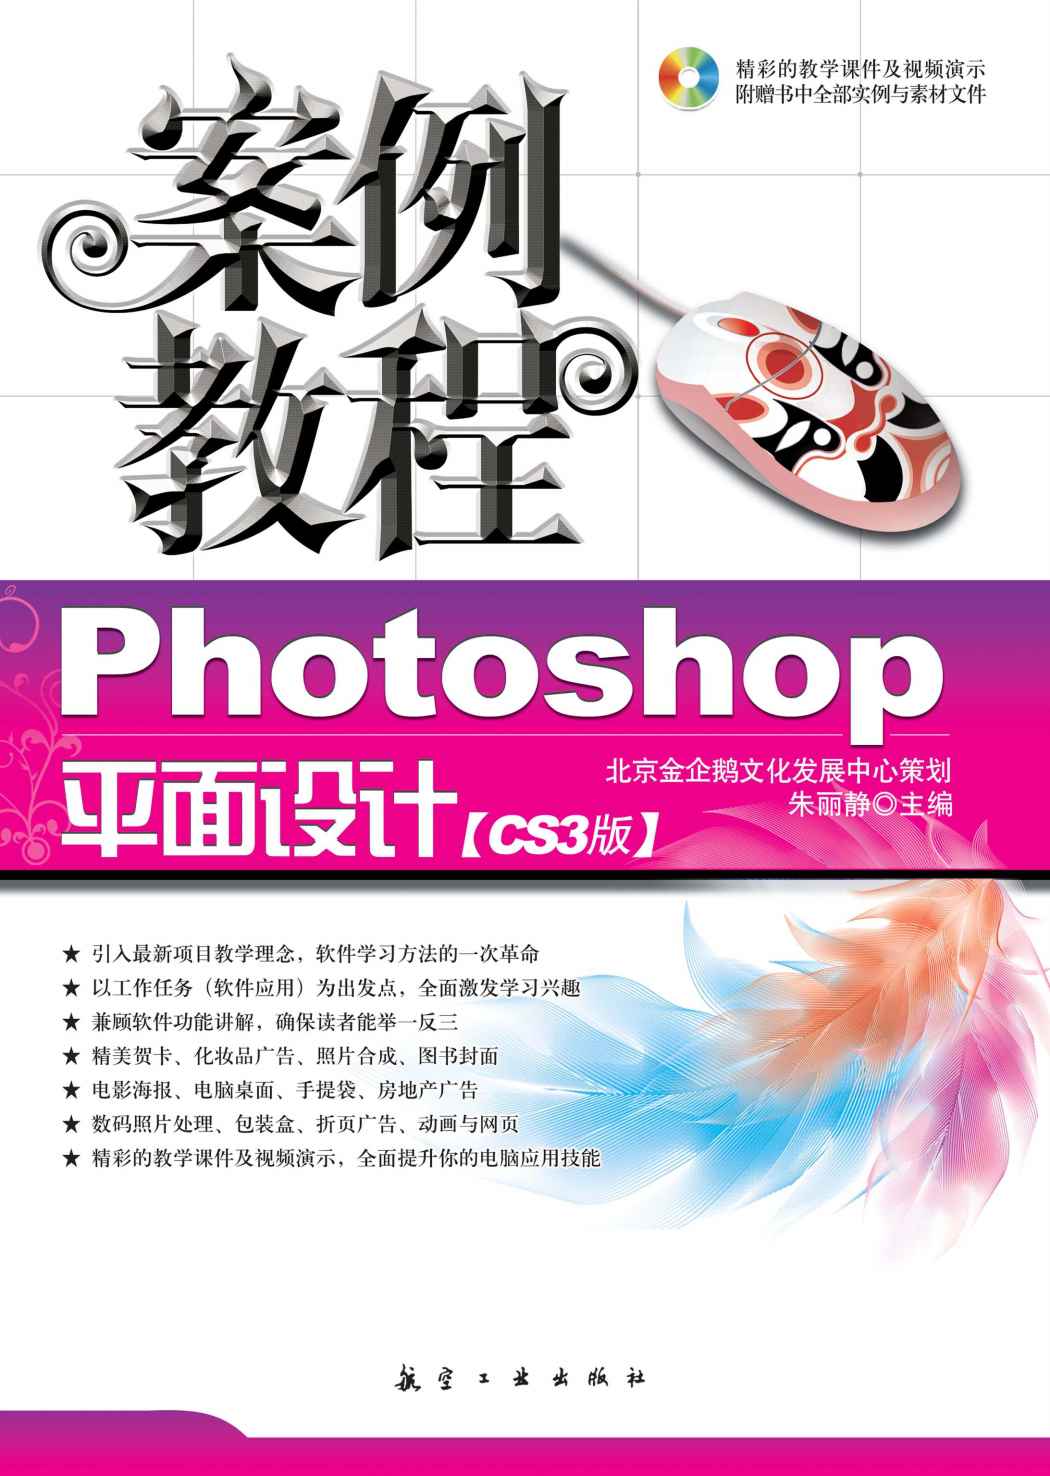 Photoshop平面設計案例教程(航空工業出版社2008年版圖書)